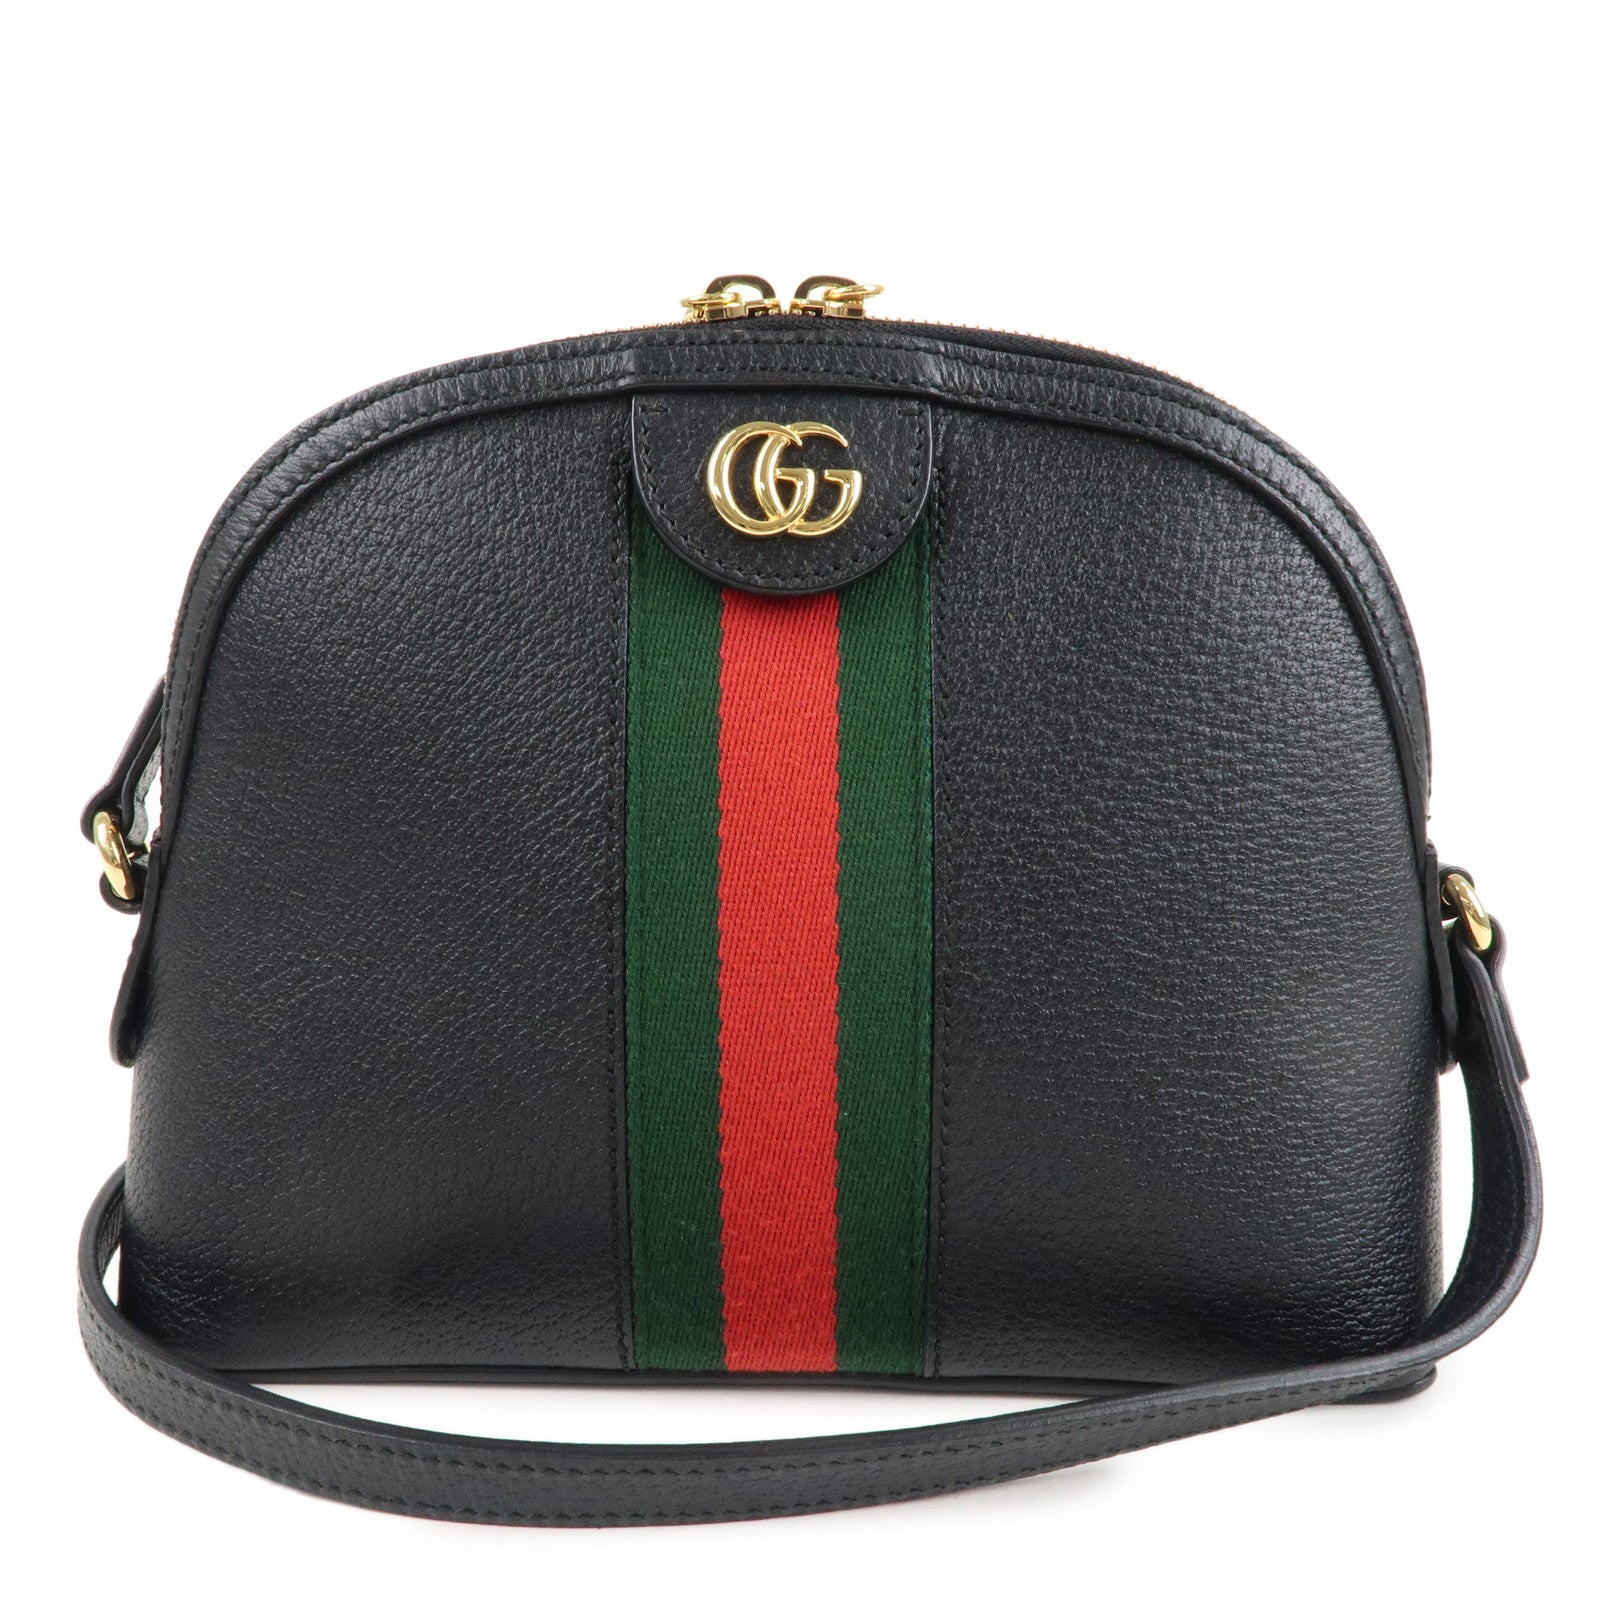 Gucci Ophidia Black Leather Shoulder Bag